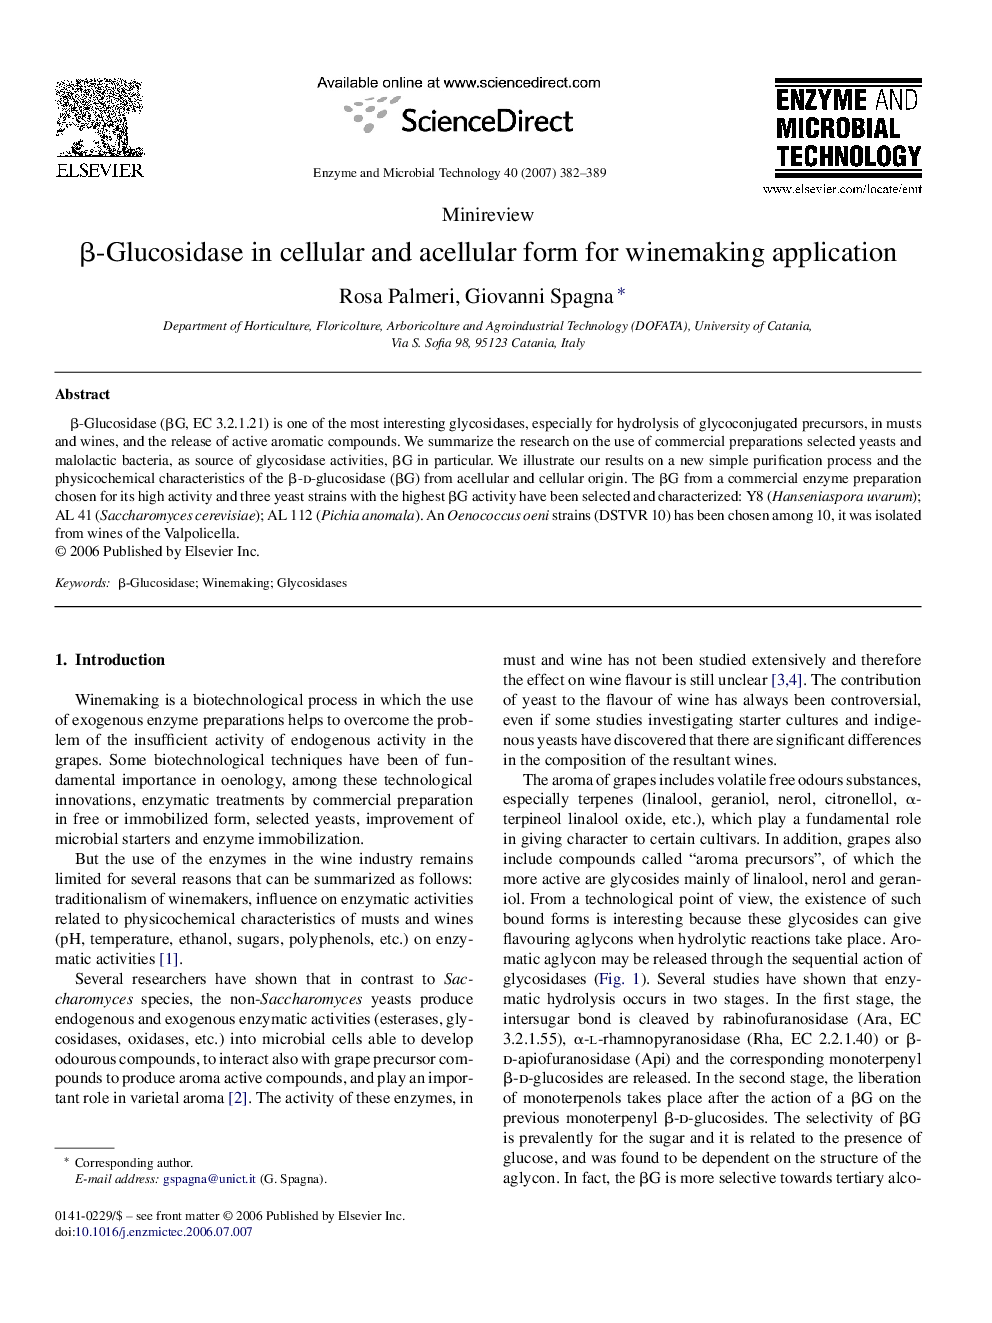 β-Glucosidase in cellular and acellular form for winemaking application